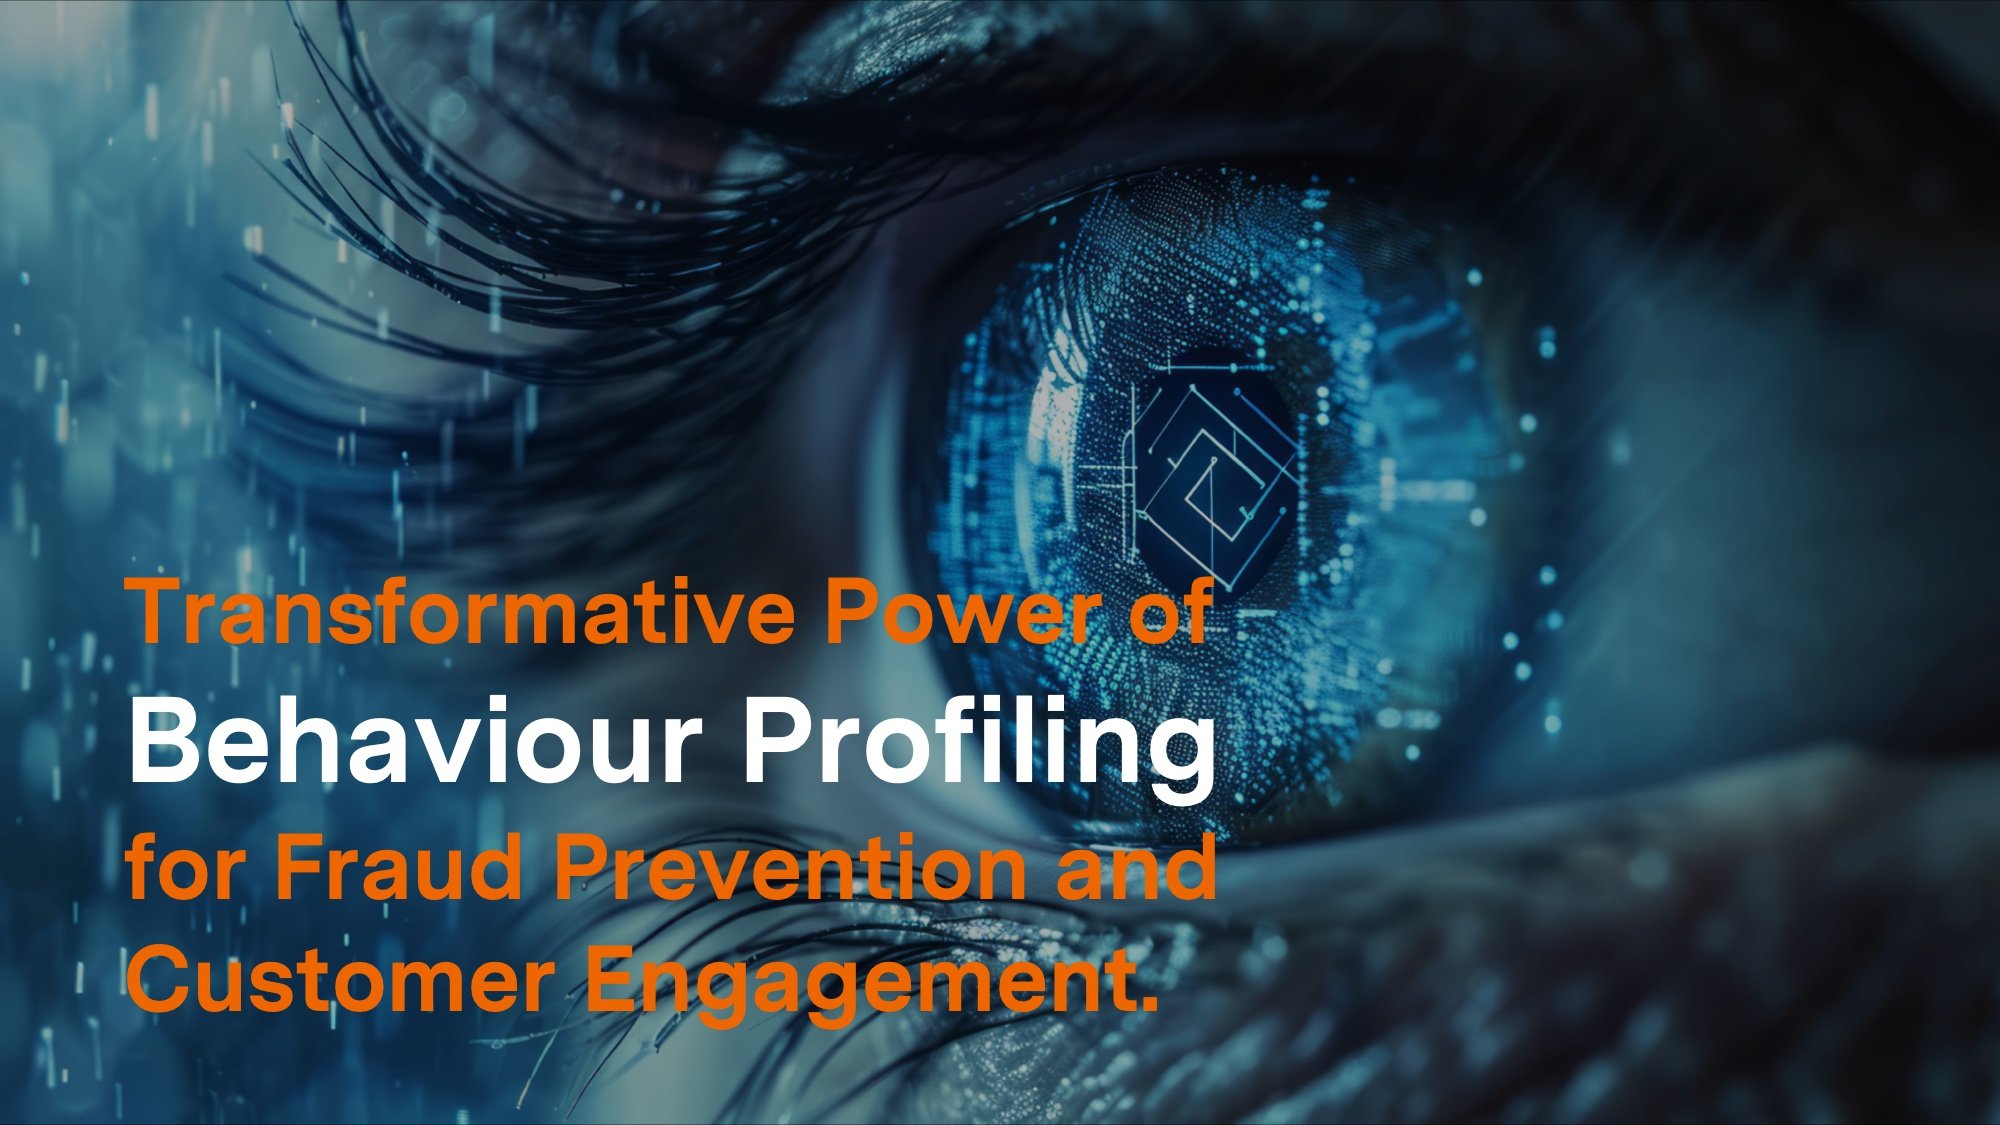 Die transformative Kraft der Verhaltensprofilierung für Betrugsprävention und Kundenbindung